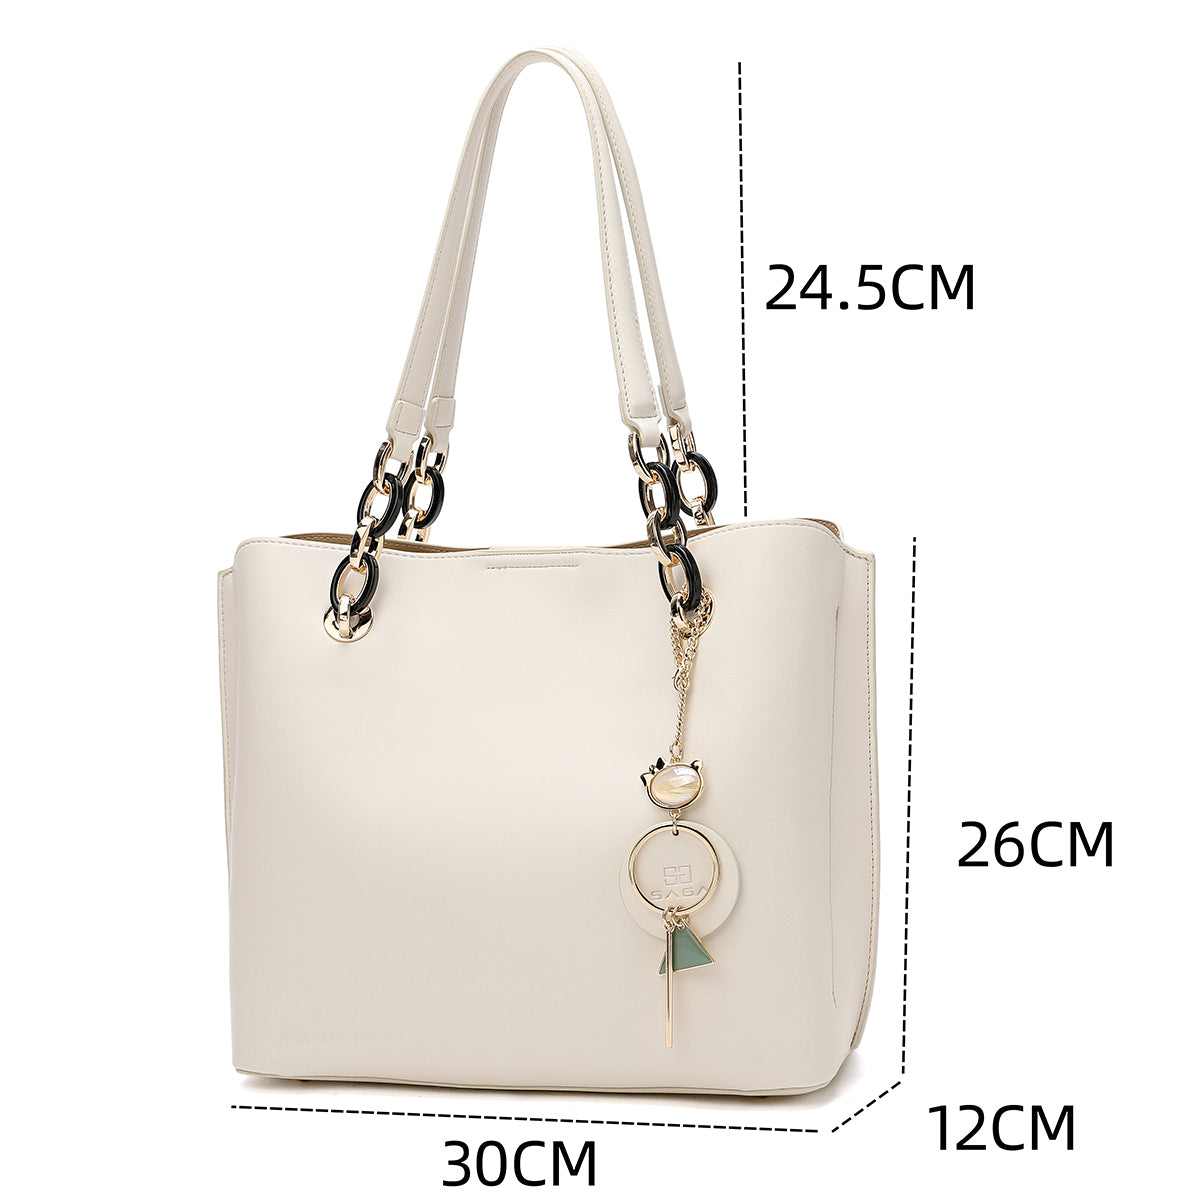 Simple large handbag